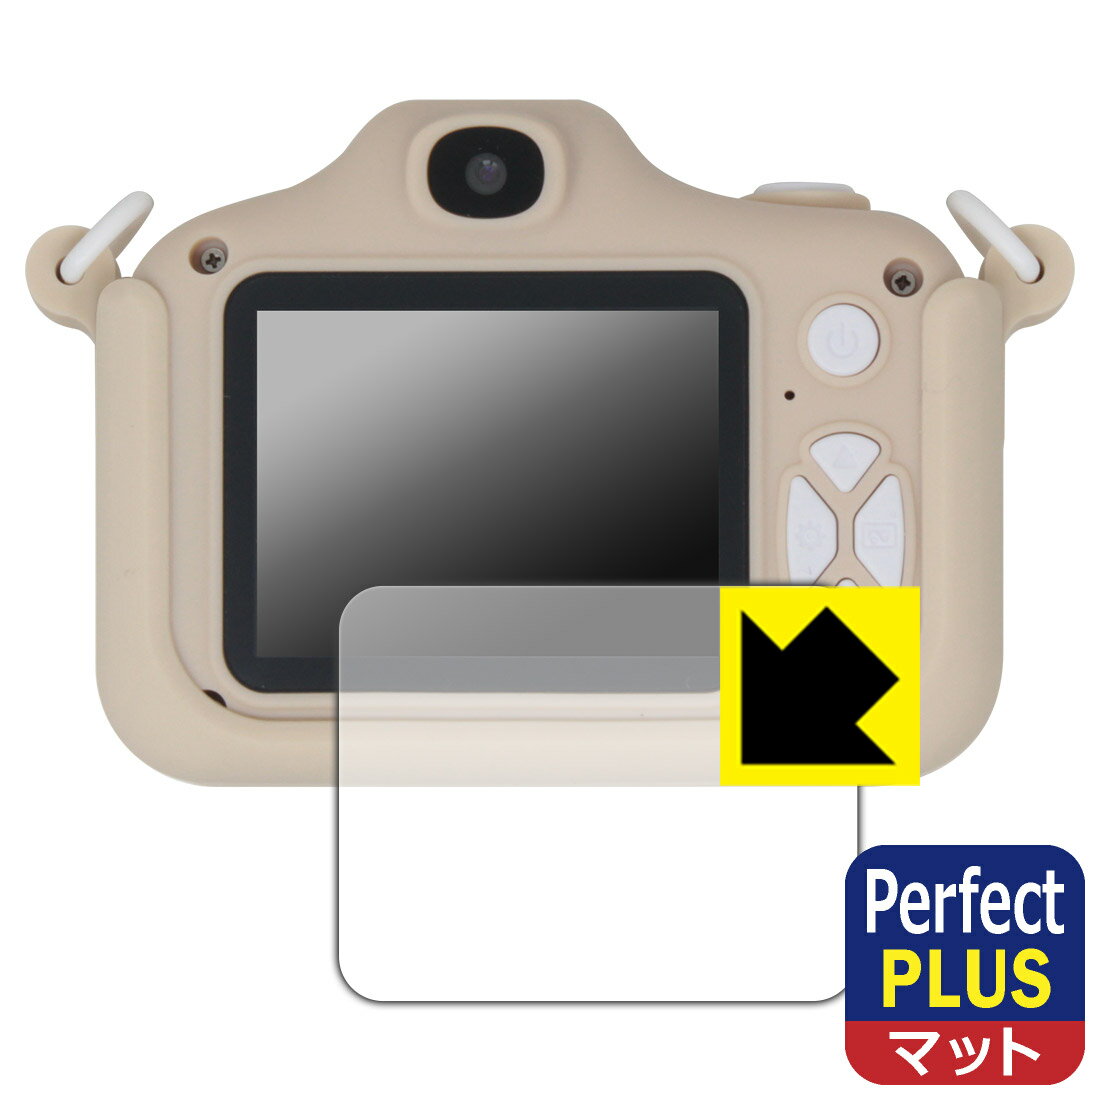 対応機種●対応機種 : トイカメラ PINT KIDS WITHyou (ウィズユー) / PINT KIDS Clover専用の商品です。●製品内容 : 画面用フィルム1枚・クリーニングワイプ1個●「Perfect Shield Plus」は画面の反射を強く抑え、指のすべりもなめらかな指紋や皮脂汚れがつきにくい『アンチグレアタイプ(非光沢)の保護フィルム』●安心の国産素材を使用。日本国内の自社工場で製造し出荷しています。 ★貼り付け失敗交換サービス対象商品★ 国内自社工場製造・発送だからできる 安心の製品保証とサポート ■製品保証 お届けした製品が誤っていたり、不具合があった場合などには、お届けから1ヶ月以内にメールにてお問い合わせください。交換等対応させていただきます。[キャンセル・返品（返金・交換）について] ■■貼り付け失敗時の交換サービス■■貼り付けに失敗しても1回だけ無償交換ができます。(失敗したフィルムをお送りいただき、新品に無償交換します。往復の送料のみお客様にご負担をお願いいたします。詳しくは製品に同封の紙をご確認ください) ■■保護フィルム貼り付け代行サービス■■保護フィルムの貼り付け作業に自信がない方には、PDA工房で貼り付け作業を代行いたします。(PDA工房の保護フィルムのみが対象です。詳しくは製品に同封の紙をご確認ください) Perfect Shield Plus【反射低減】保護フィルム 素材説明 ■画面の映り込みを強く抑える反射防止タイプ！表面に微細な凹凸を作ることにより、外光を乱反射させギラツキを抑える「アンチグレア加工」がされております。屋外での太陽光の映り込み、屋内でも蛍光灯などの映り込みが気になるシーンが多い方におすすめです。また、指紋がついた場合でも目立ちにくいという特長があります。【Perfect Shield Plus】は、従来の製品【Perfect Shield】よりも反射低減(アンチグレア)効果が強いフィルムです。映り込み防止を一番に優先する方におすすめです。(反射低減効果が強いため、表示画面との相性により色のにじみ・モアレ等が発生する場合があります)■防指紋のハードコート！さらさらな指ざわり！指滑りはさらさらな使用感でストレスのない操作・入力が可能です。ハードコート加工がされており、キズや擦れに強くなっています。簡単にキズがつかず長くご利用いただけます。反射防止のアンチグレア加工で指紋が目立ちにくい上、表面は防汚コーティングがされており、皮脂や汚れがつきにくく、また、落ちやすくなっています。(【Perfect Shield】よりも指紋は目立ちません)■気泡の入りにくい特殊な自己吸着タイプ接着面は気泡の入りにくい特殊な自己吸着タイプです。素材に柔軟性があり、貼り付け作業も簡単にできます。また、はがすときにガラス製フィルムのように割れてしまうことはありません。貼り直しが何度でもできるので、正しい位置へ貼り付けられるまでやり直すことができます。■安心の日本製最高級グレードの国産素材を日本国内の弊社工場で加工している完全な Made in Japan です。安心の品質をお届けします。 【ポスト投函送料無料】商品は【ポスト投函発送 (追跡可能メール便)】で発送します。お急ぎ、配達日時を指定されたい方は以下のクーポンを同時購入ください。【お急ぎ便クーポン】　プラス110円(税込)で速達扱いでの発送。お届けはポストへの投函となります。【配達日時指定クーポン】　プラス550円(税込)で配達日時を指定し、宅配便で発送させていただきます。【お急ぎ便クーポン】はこちらをクリック【配達日時指定クーポン】はこちらをクリック